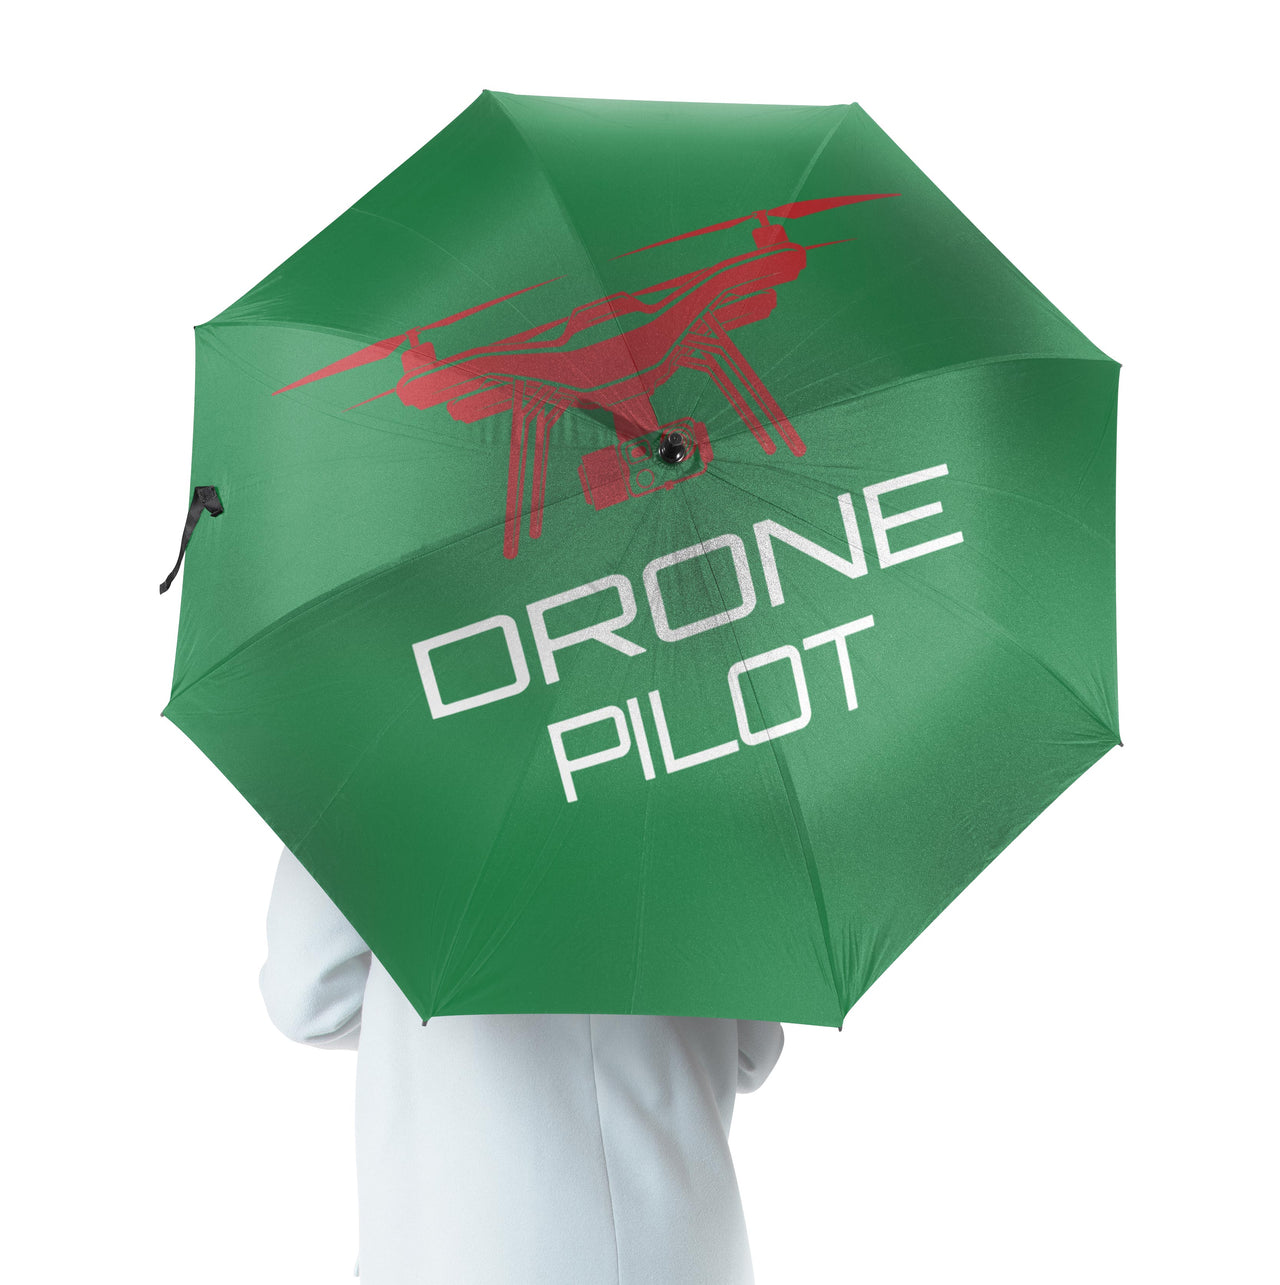 Drone Pilot Designed Umbrella